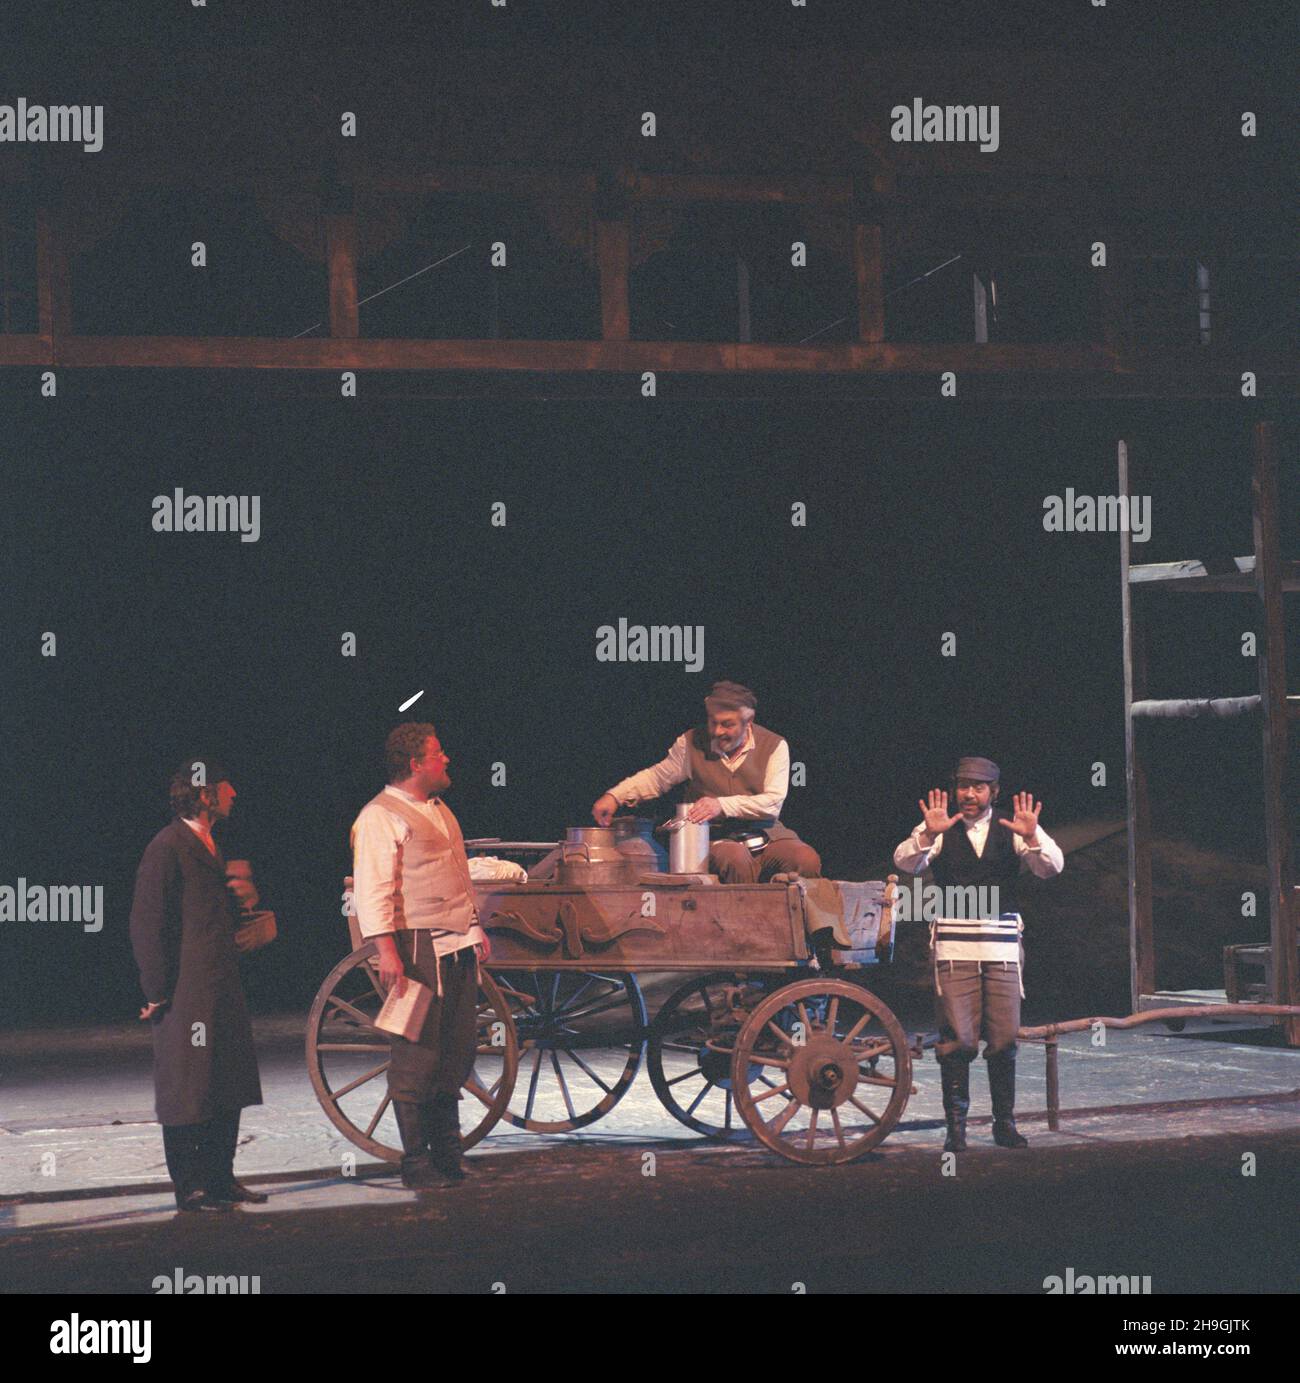 Gdynia 08.1987. Musical pt. Skrzypek na dachu, w re¿yserii Jerzego Gruzy w Teatrze Muzycznym w Gdyni. Nz. w scenie zbiorowej m.in. Juliusz Berger (Tewie) (3L). uu  PAP/Jan Morek    Dok³adny dzieñ wydarzenia nieustalony.       Gdynia August 1987. The Fiddler on the Roof musical directed by Jerzy Gruza at the Music Theatre in Gdynia. Pictured: the drop scene with Juliusz Berger (Tevye) (3rd left).  uu  PAP/Jan Morek    Exact date unknown. Stock Photo